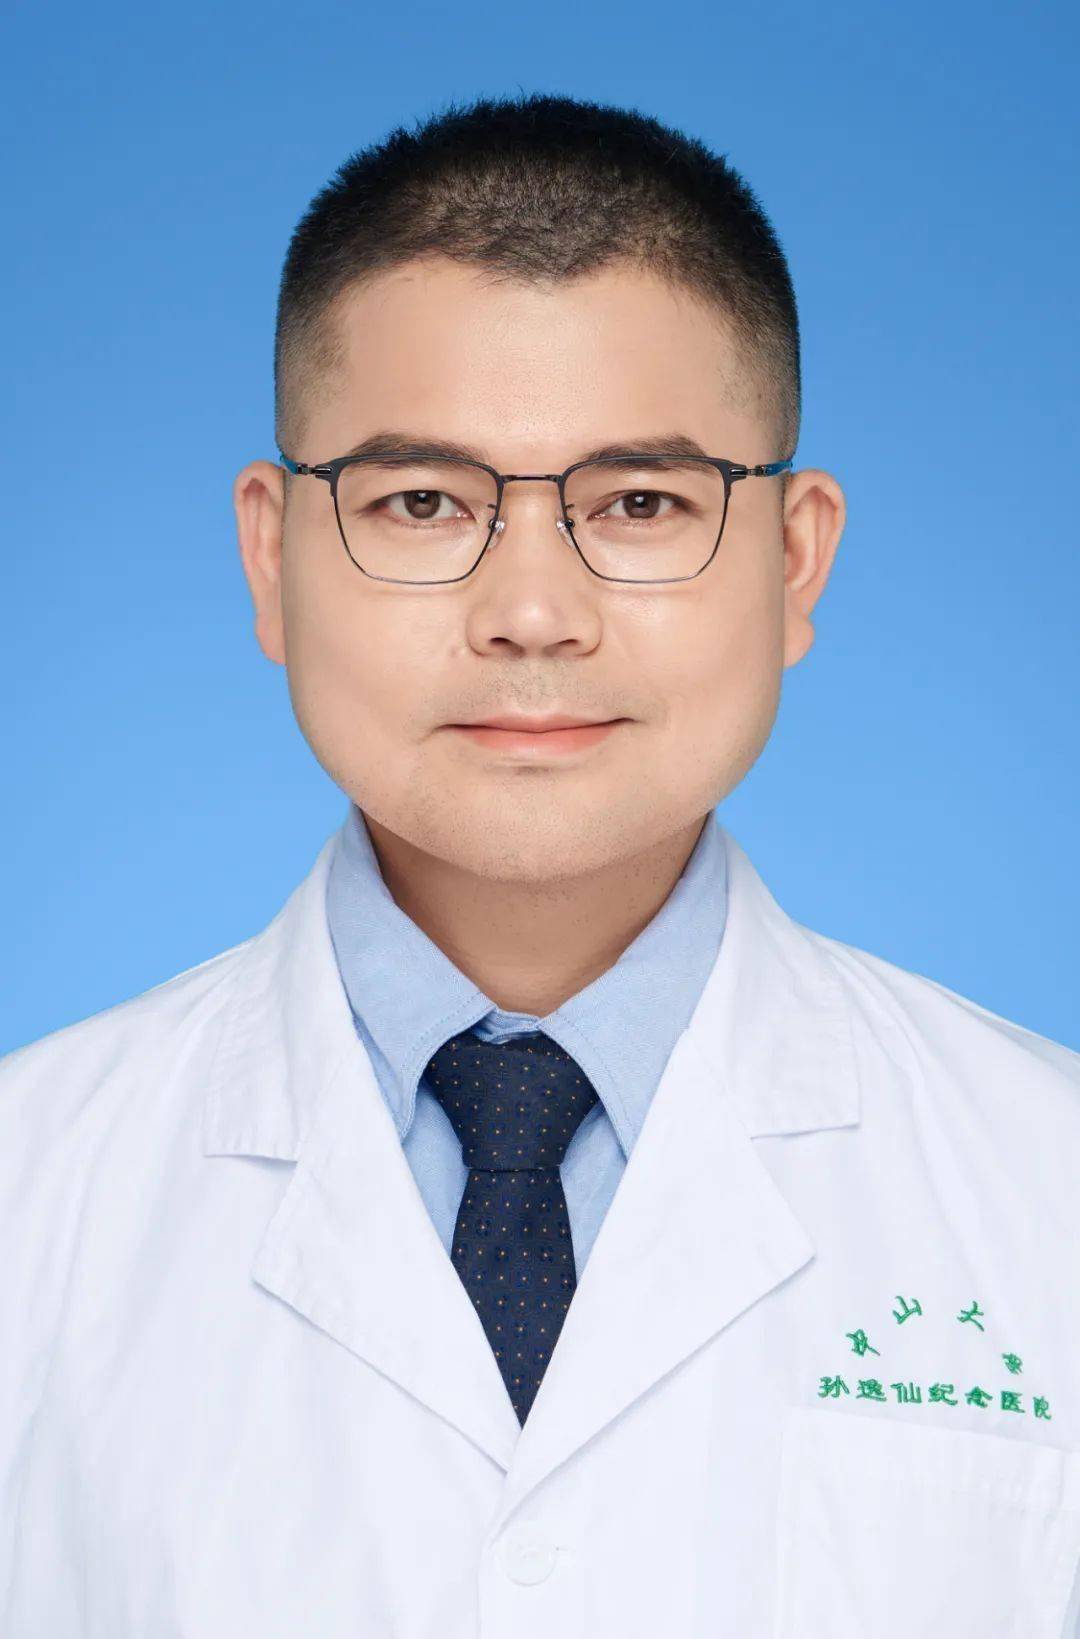 范胜诺副主任医师,硕士生导师专业特长:熟练掌握常见神经系统疾病